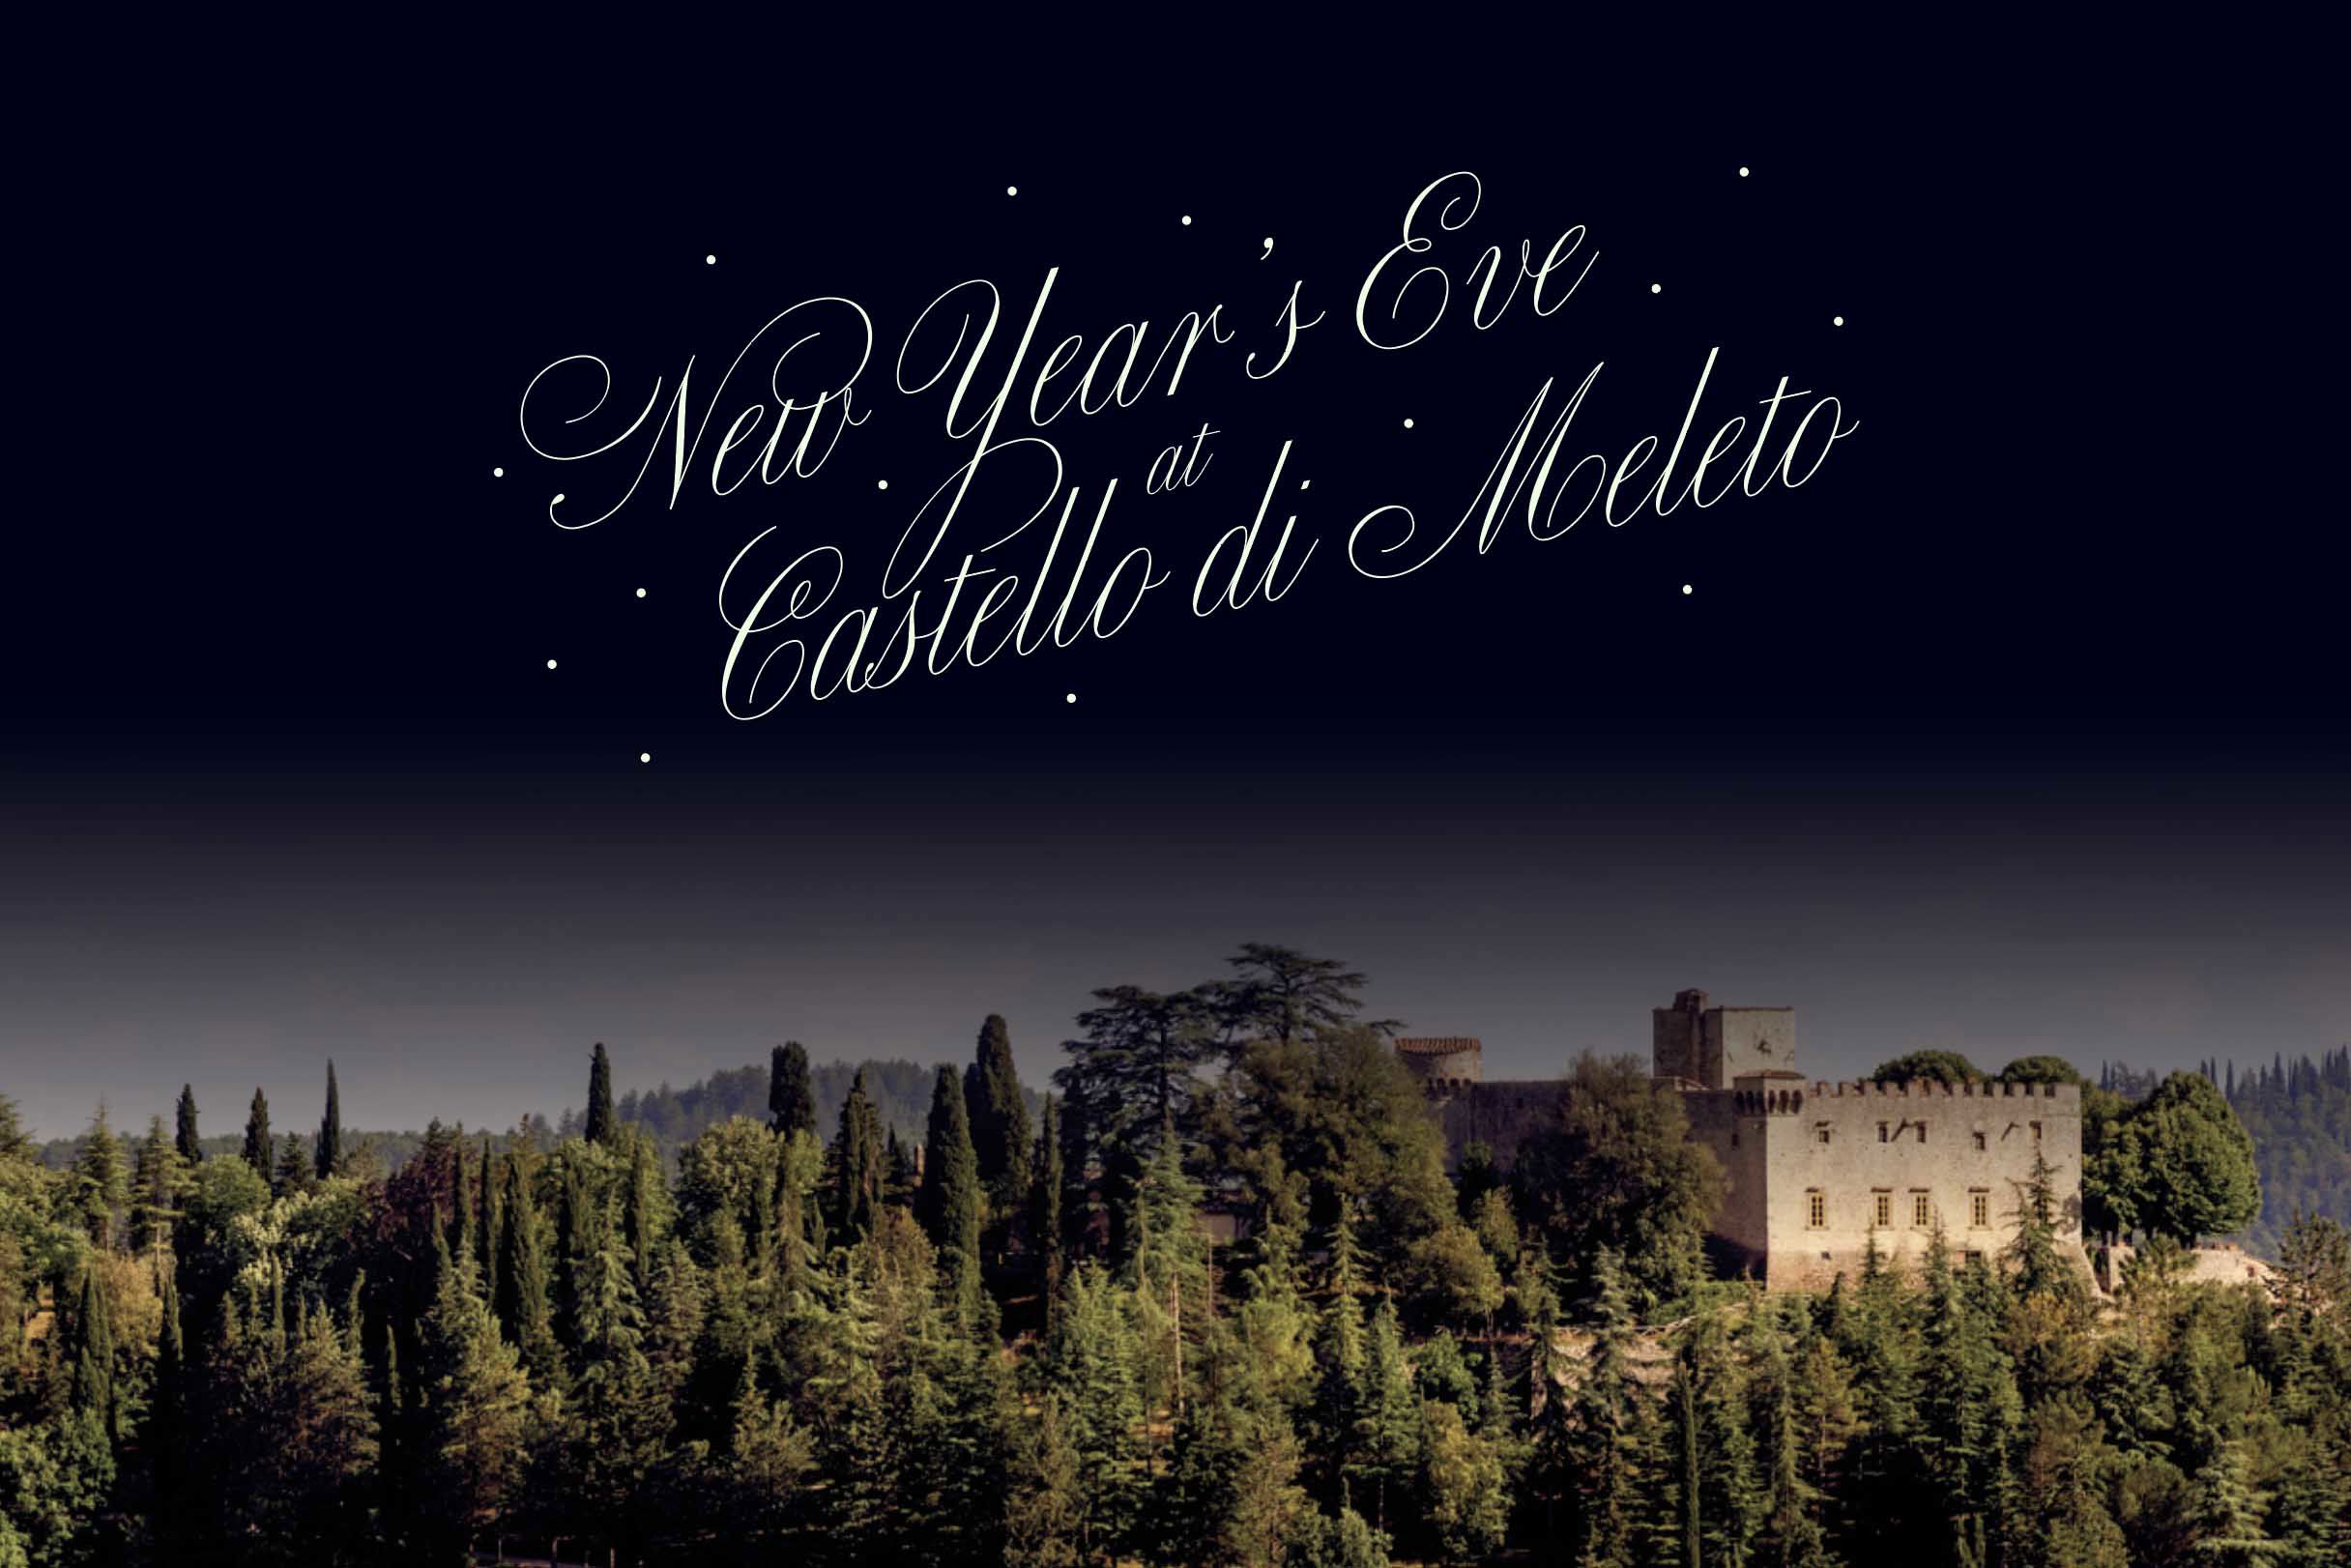 New Year's Eve al Castello di Meleto 1